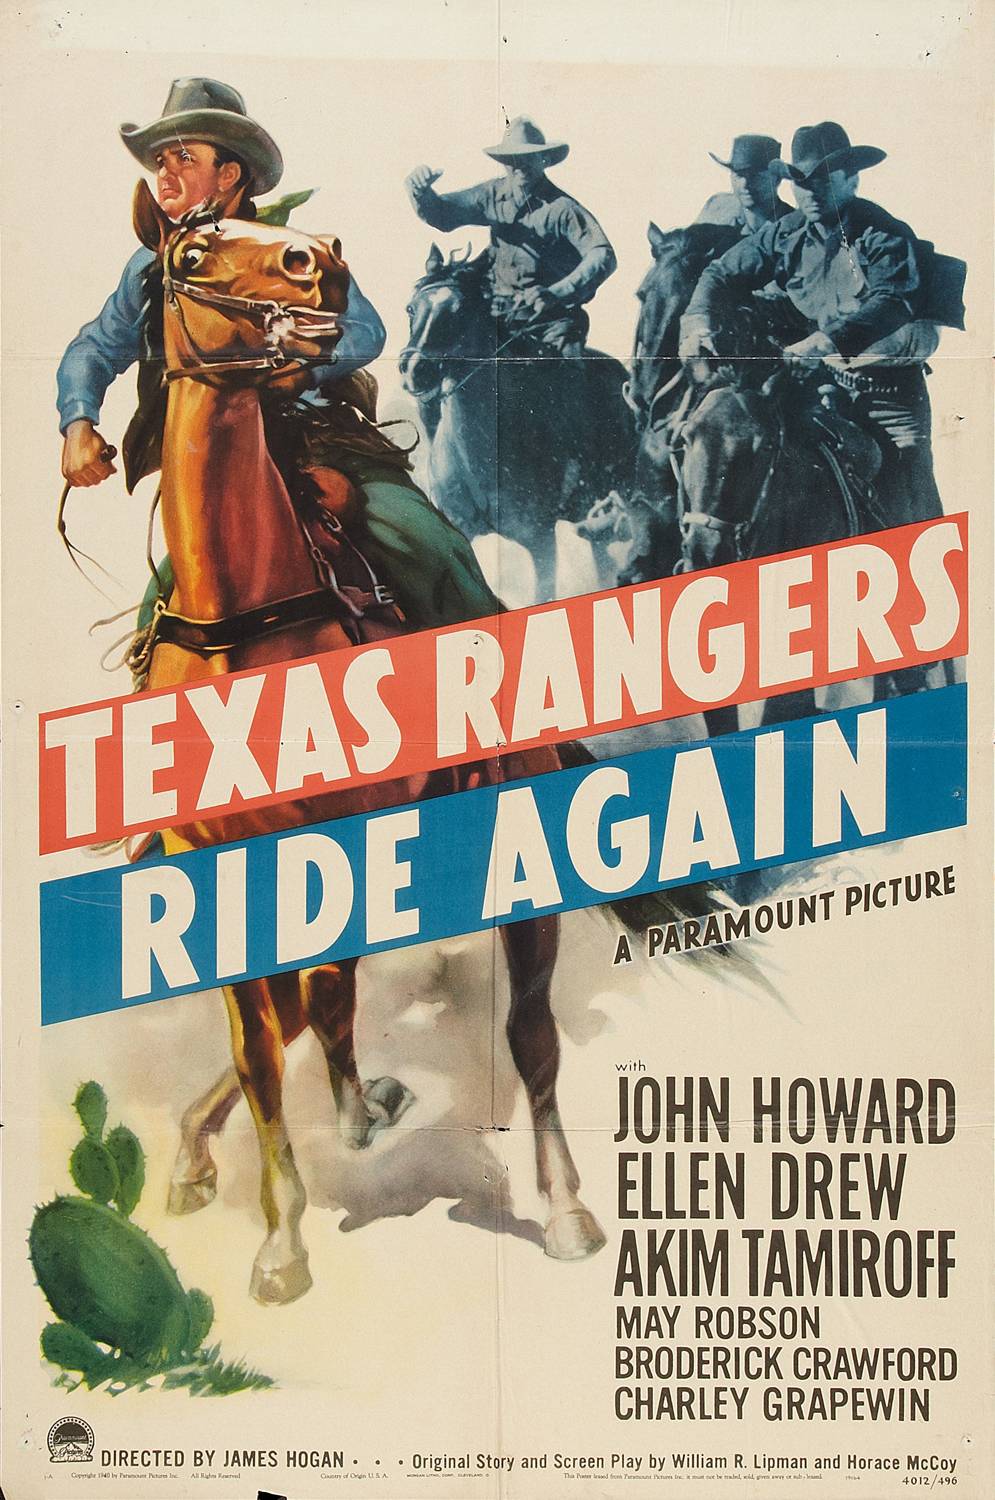 Техасские рейнджеры снова в седле / The Texas Rangers Ride Again (1940) отзывы. Рецензии. Новости кино. Актеры фильма Техасские рейнджеры снова в седле. Отзывы о фильме Техасские рейнджеры снова в седле